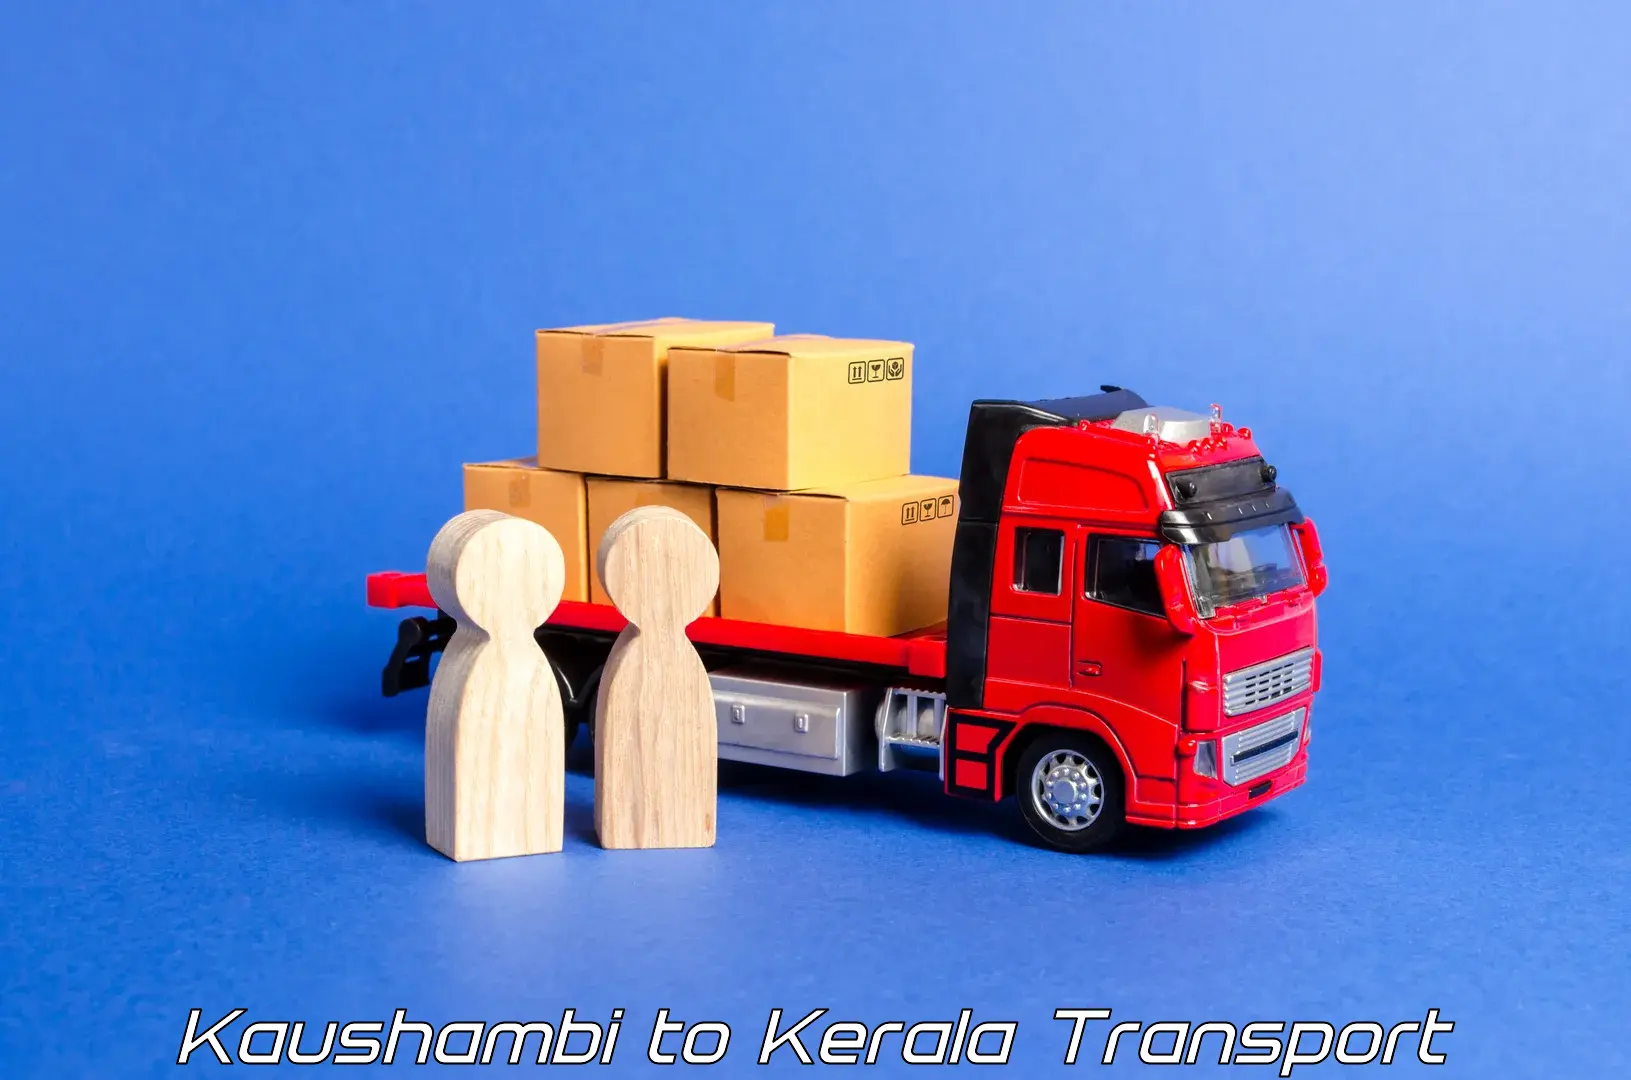 Container transportation services Kaushambi to Kakkur